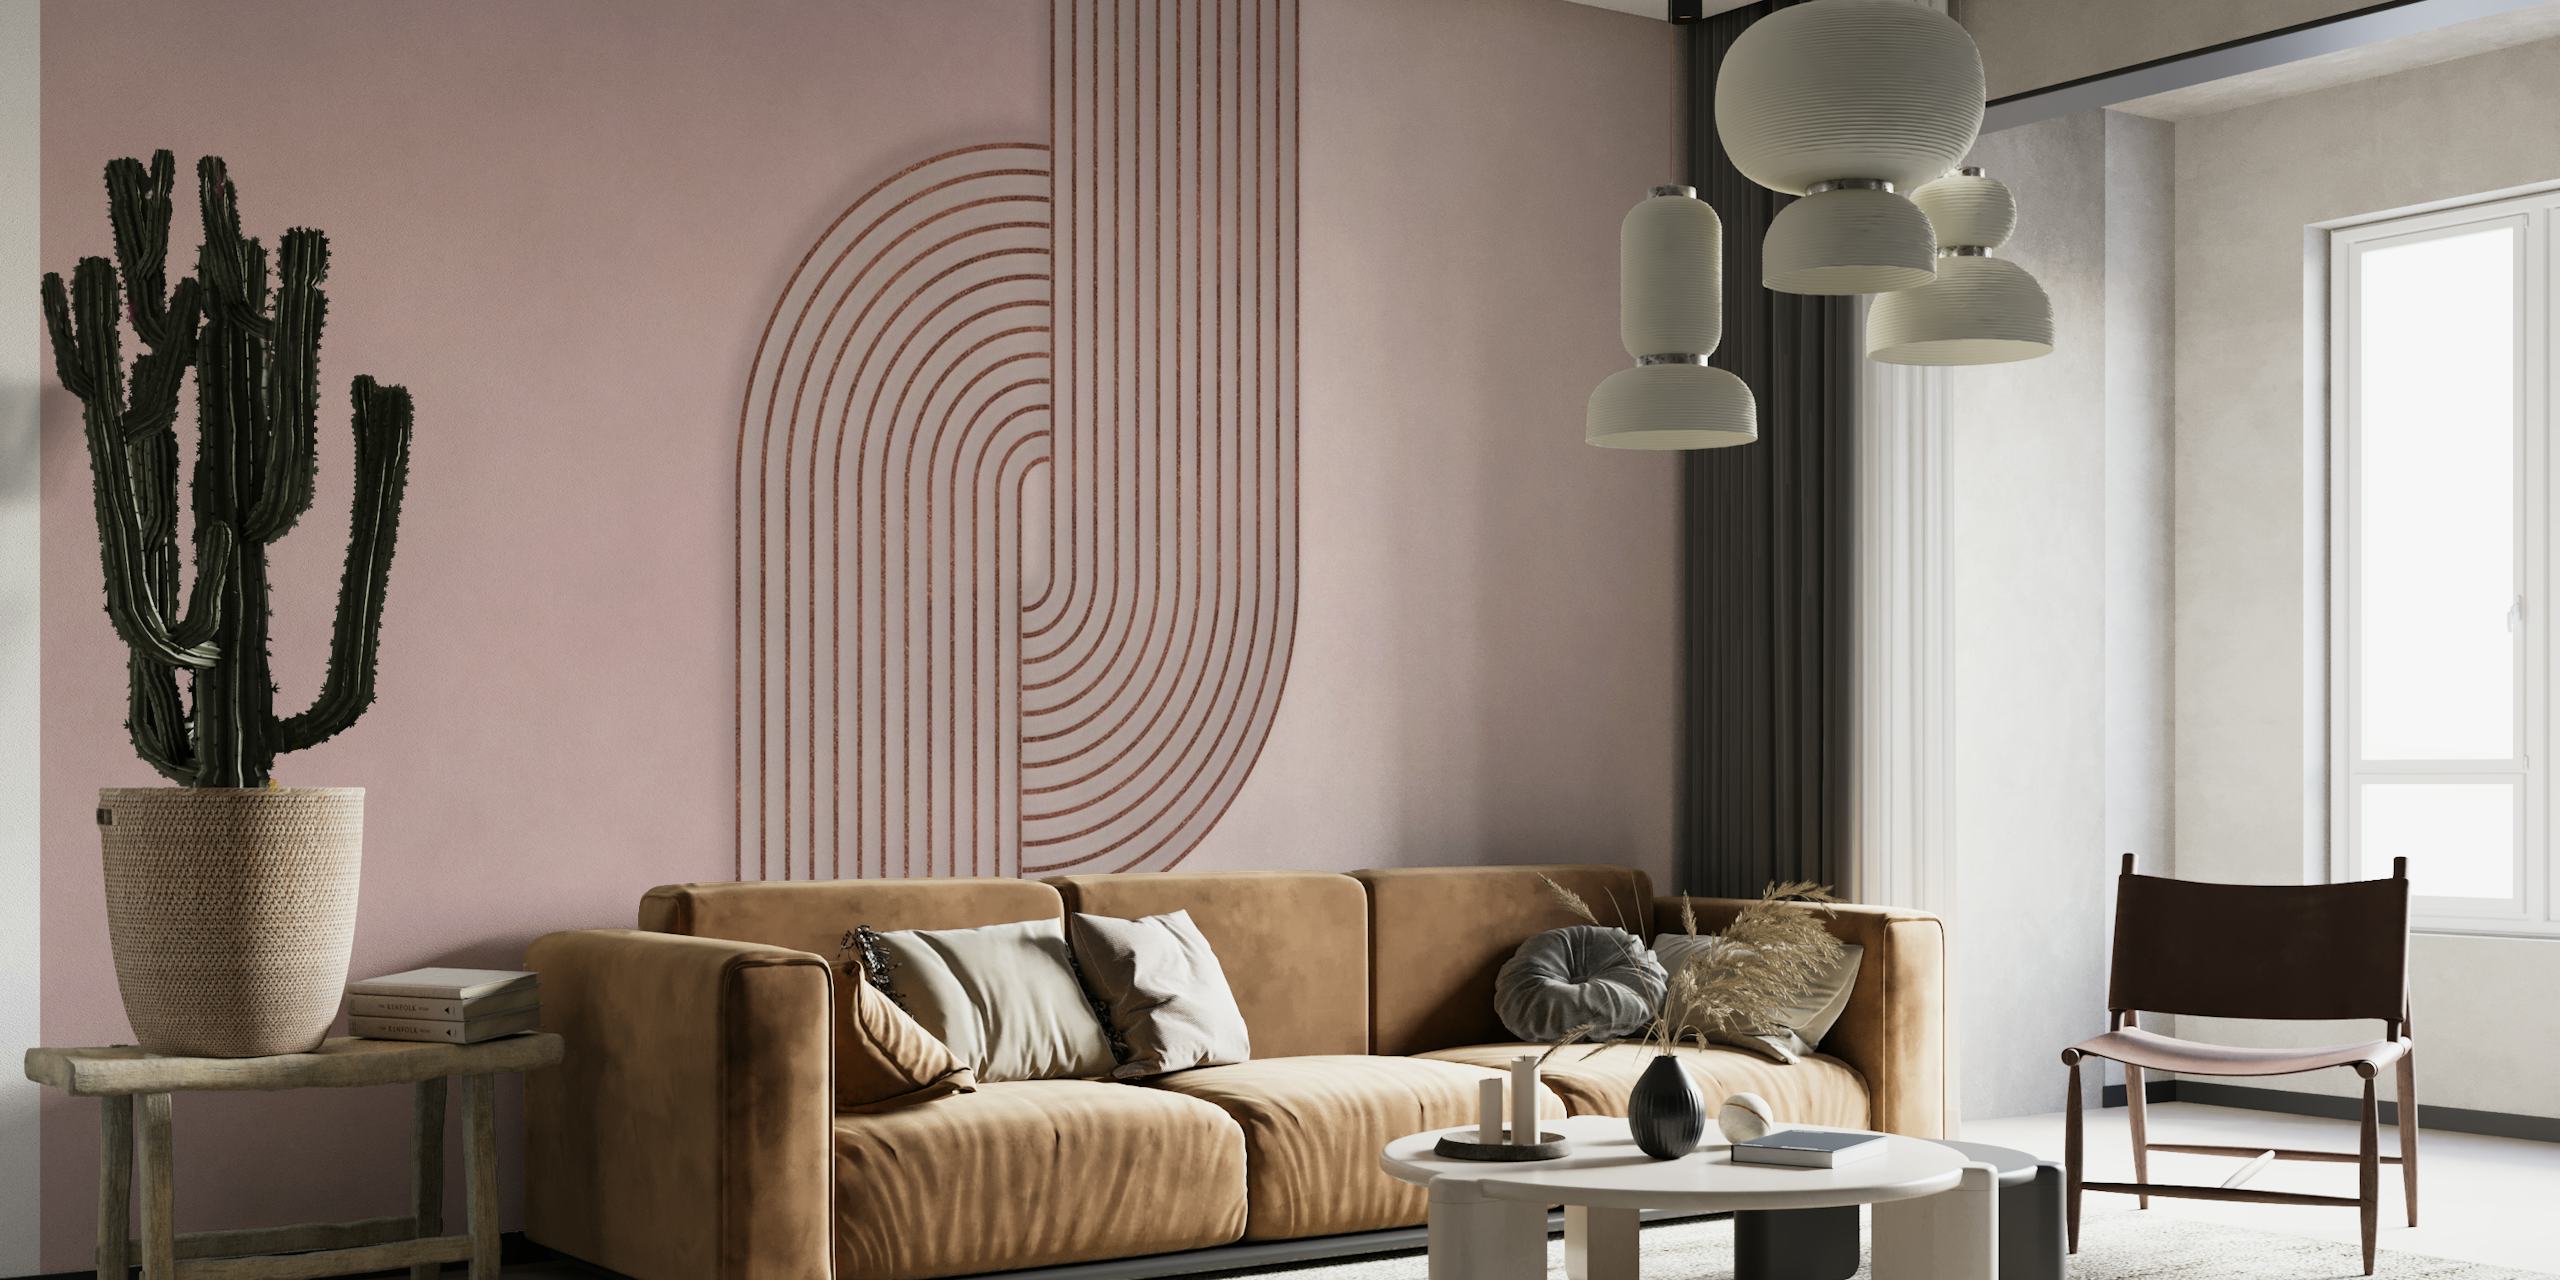 Bauhaus Twist Mid Century Modern Art Rosegold Blush Pink behang